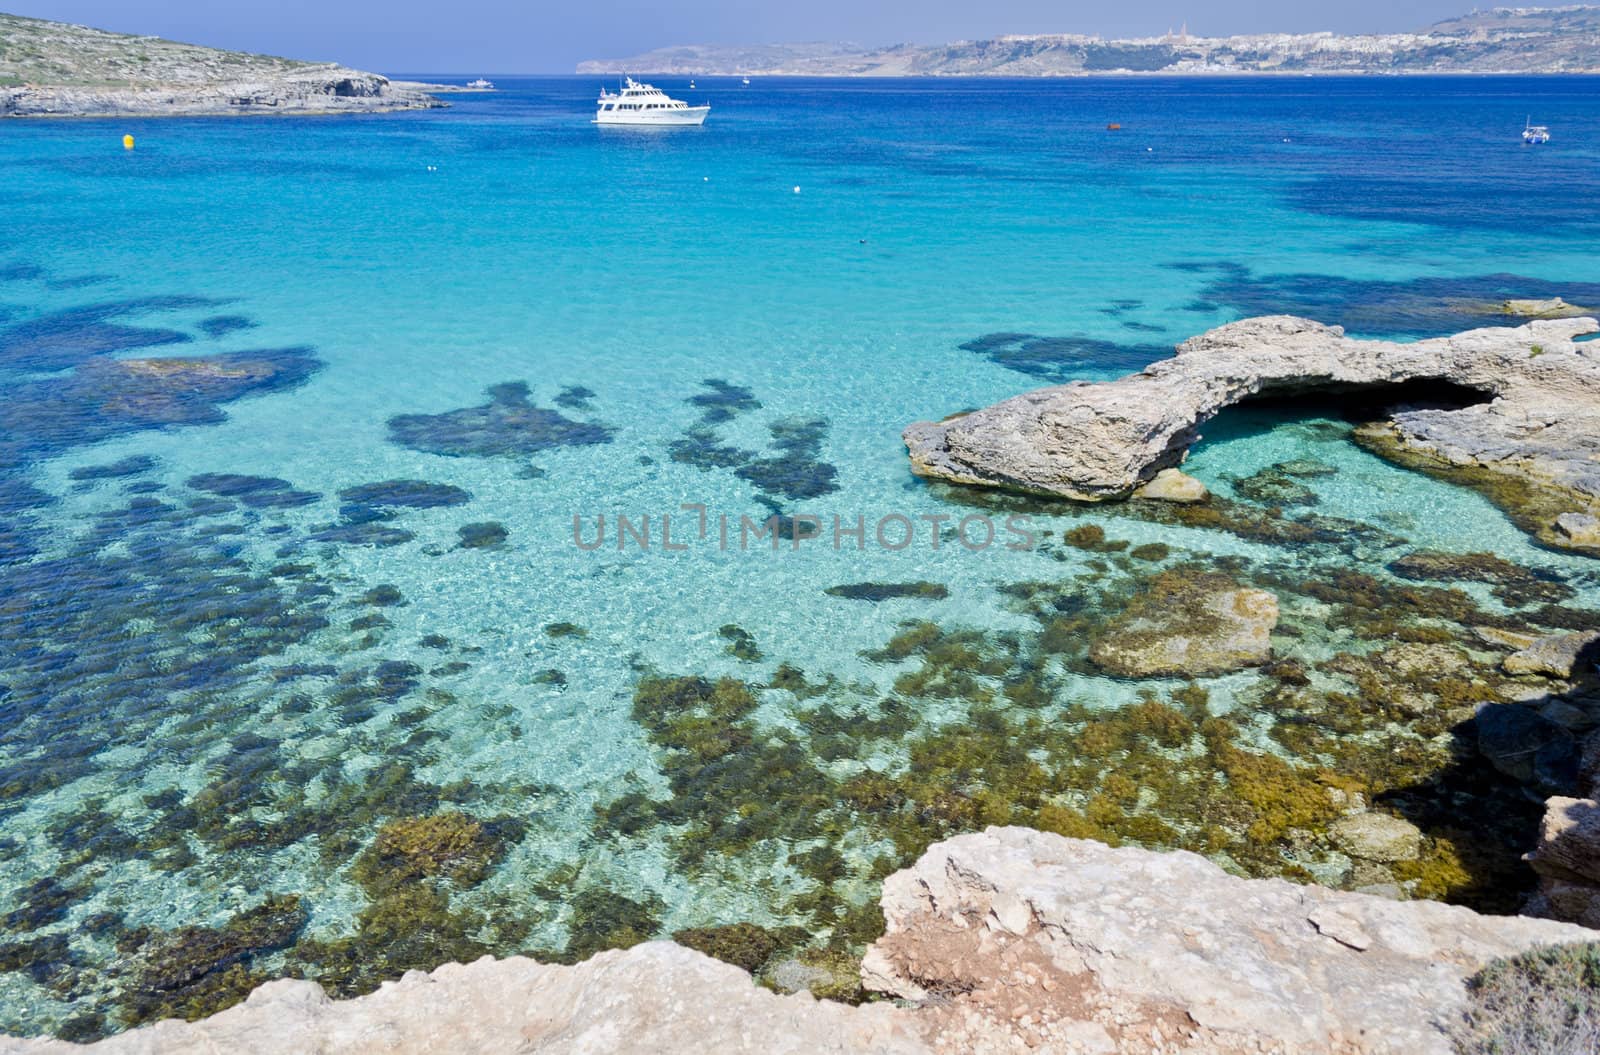 The Blue Lagoon - Comino, Malta